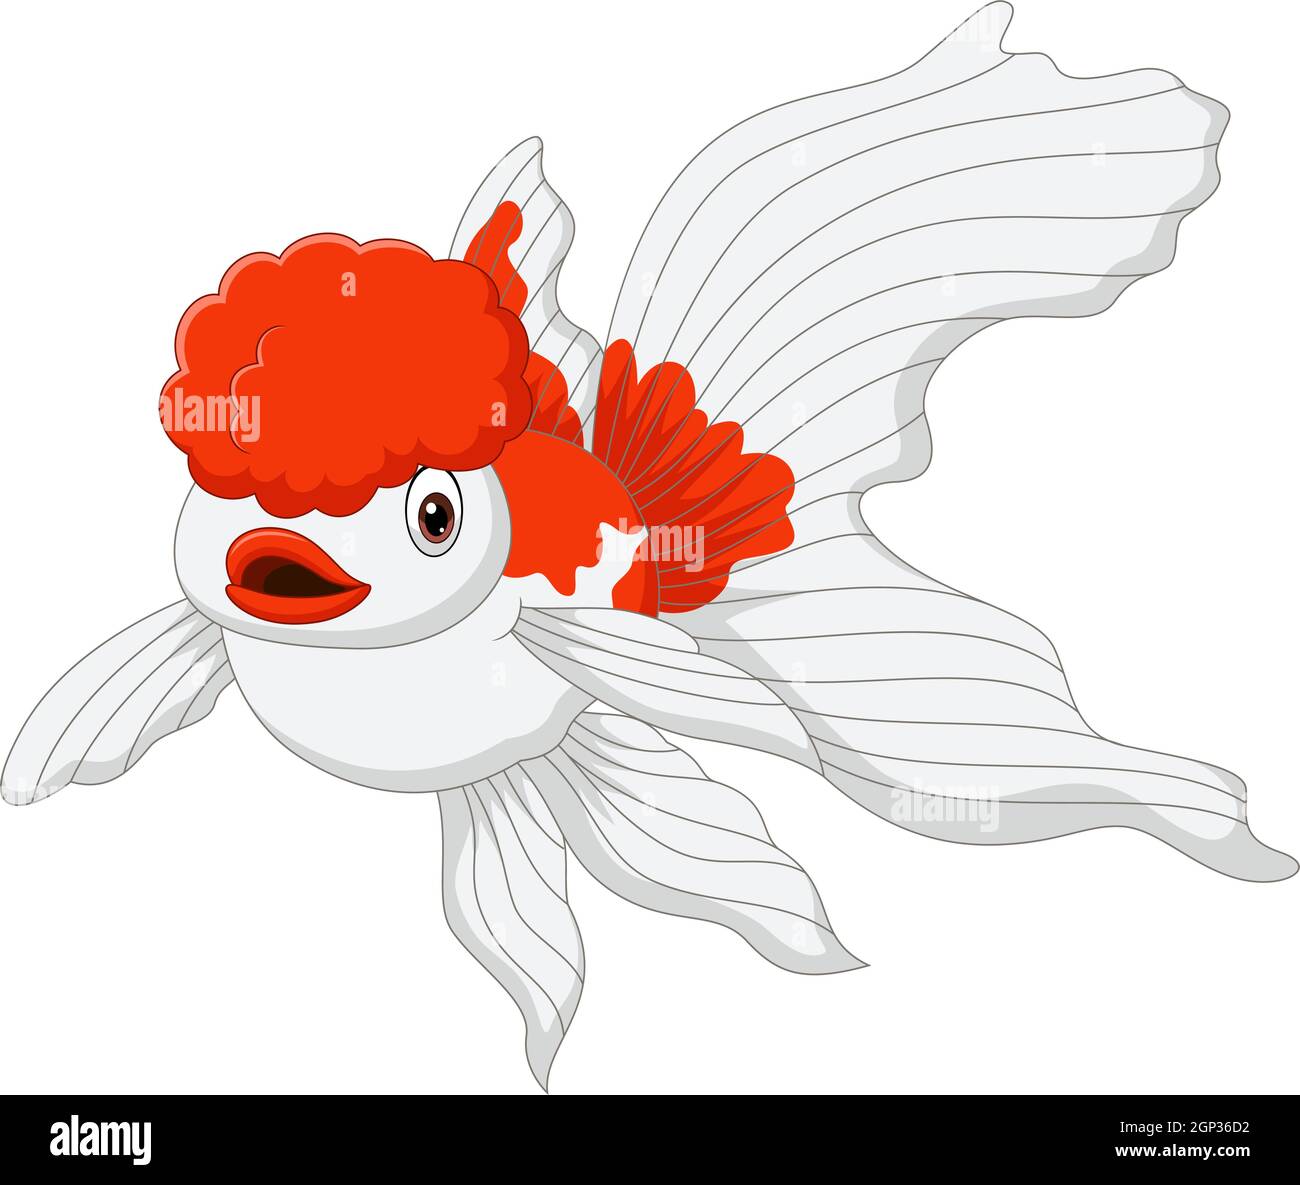 Cartoon oranda de poissons rouges sur un fond blanc Illustration de Vecteur